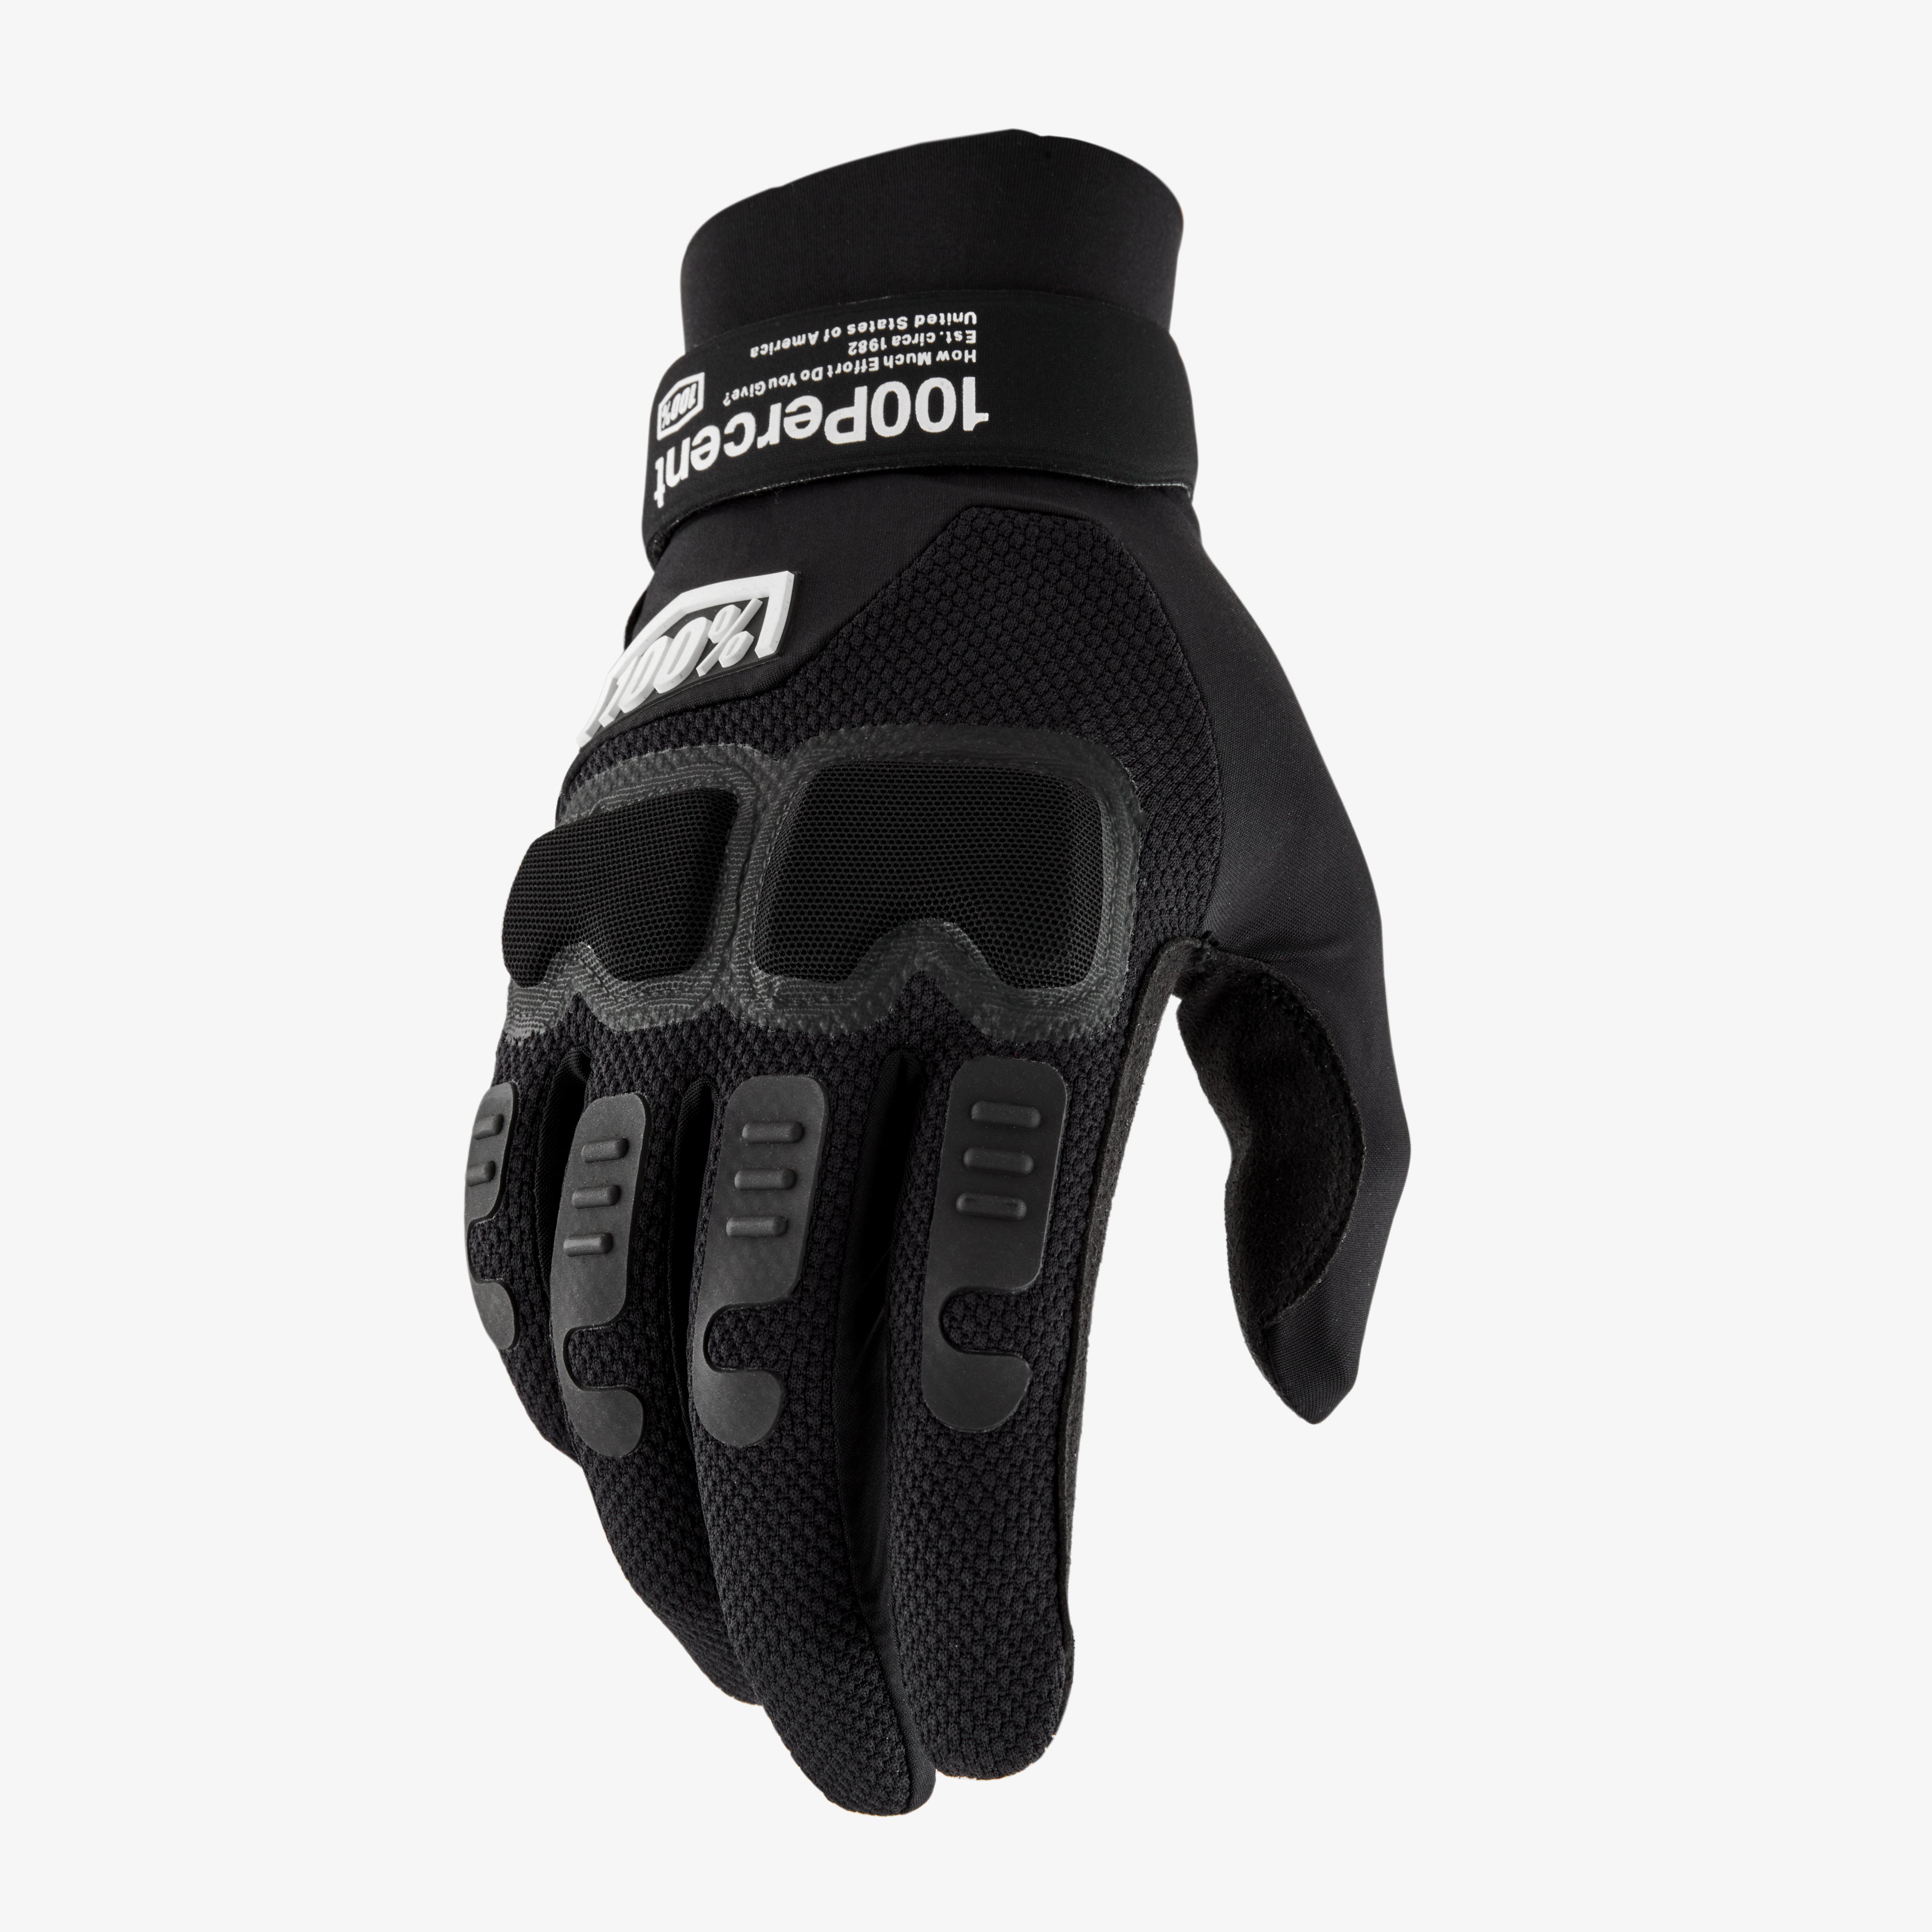 LANGDALE Gloves Black